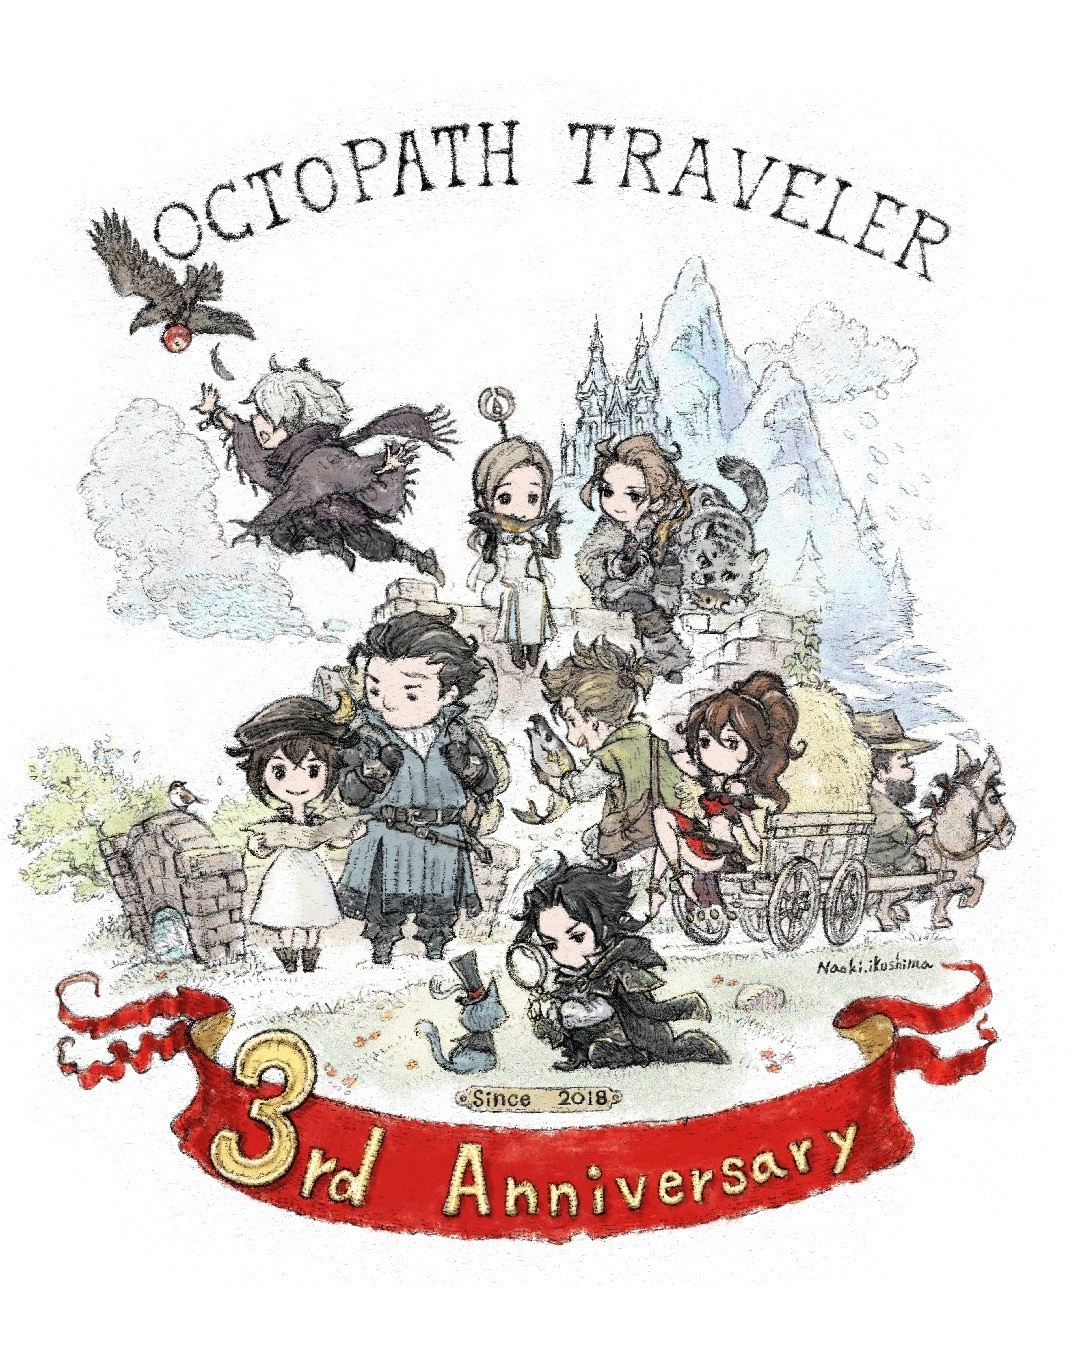 《歧路旅人 Octopath Traveler》上市届满三周年 官方释出庆祝用贺图